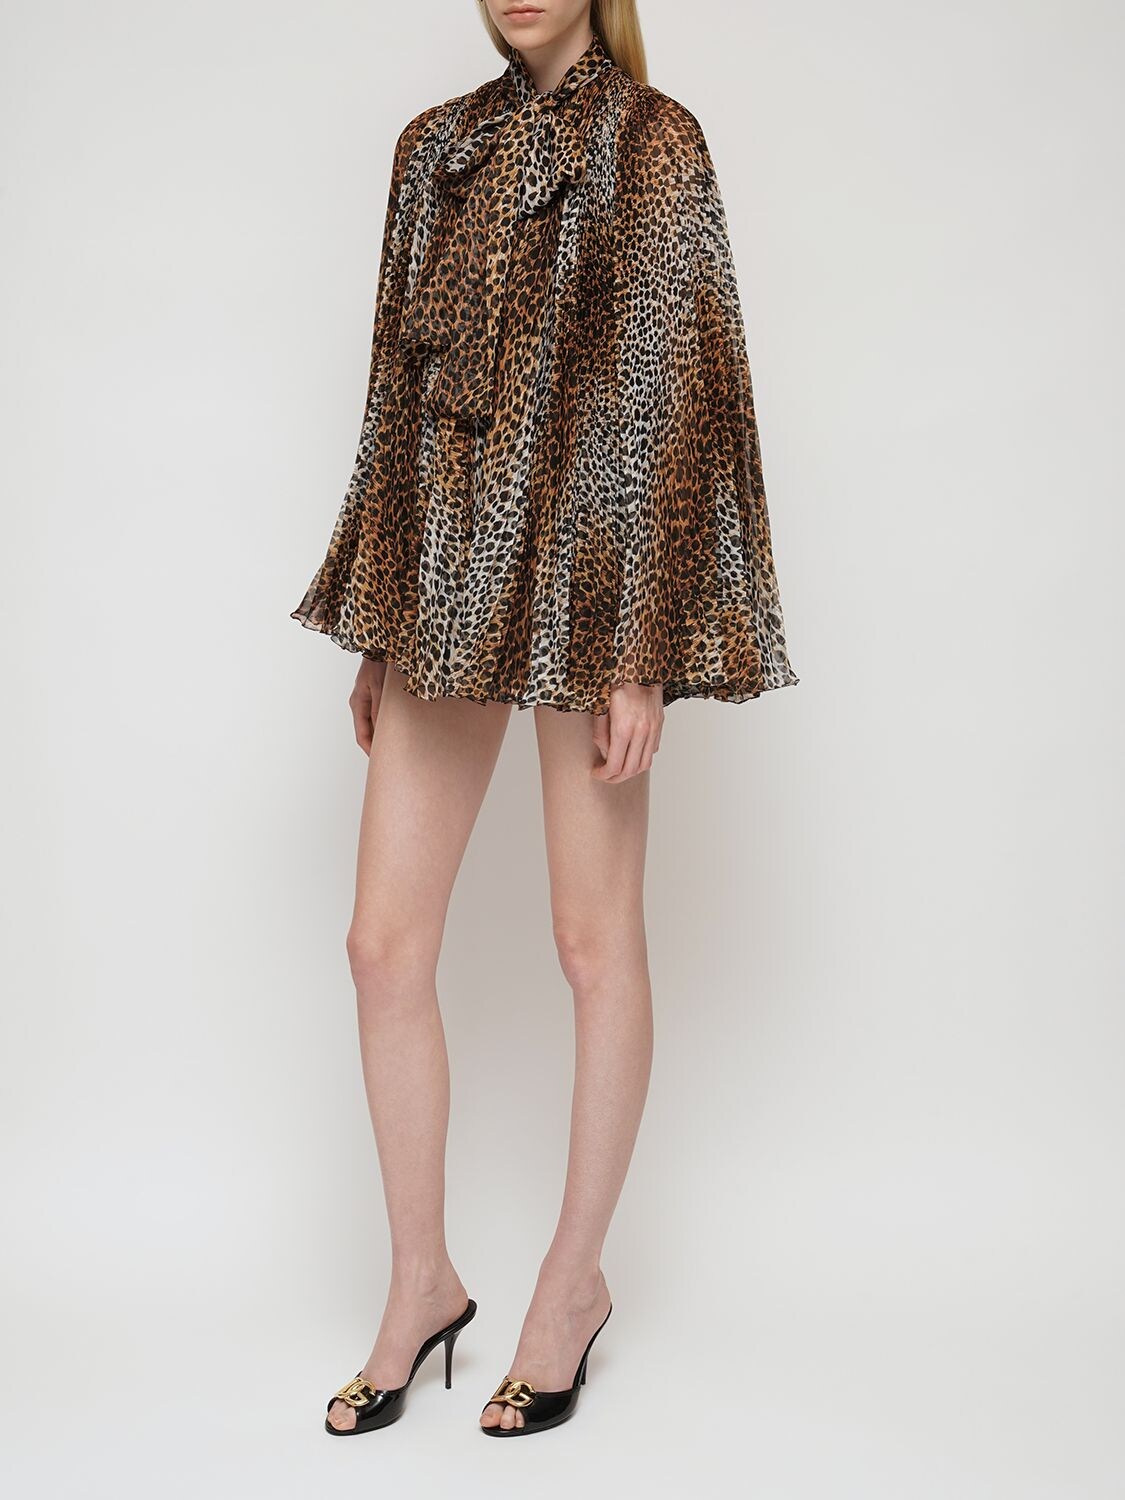 Leopard シフォンミニドレス